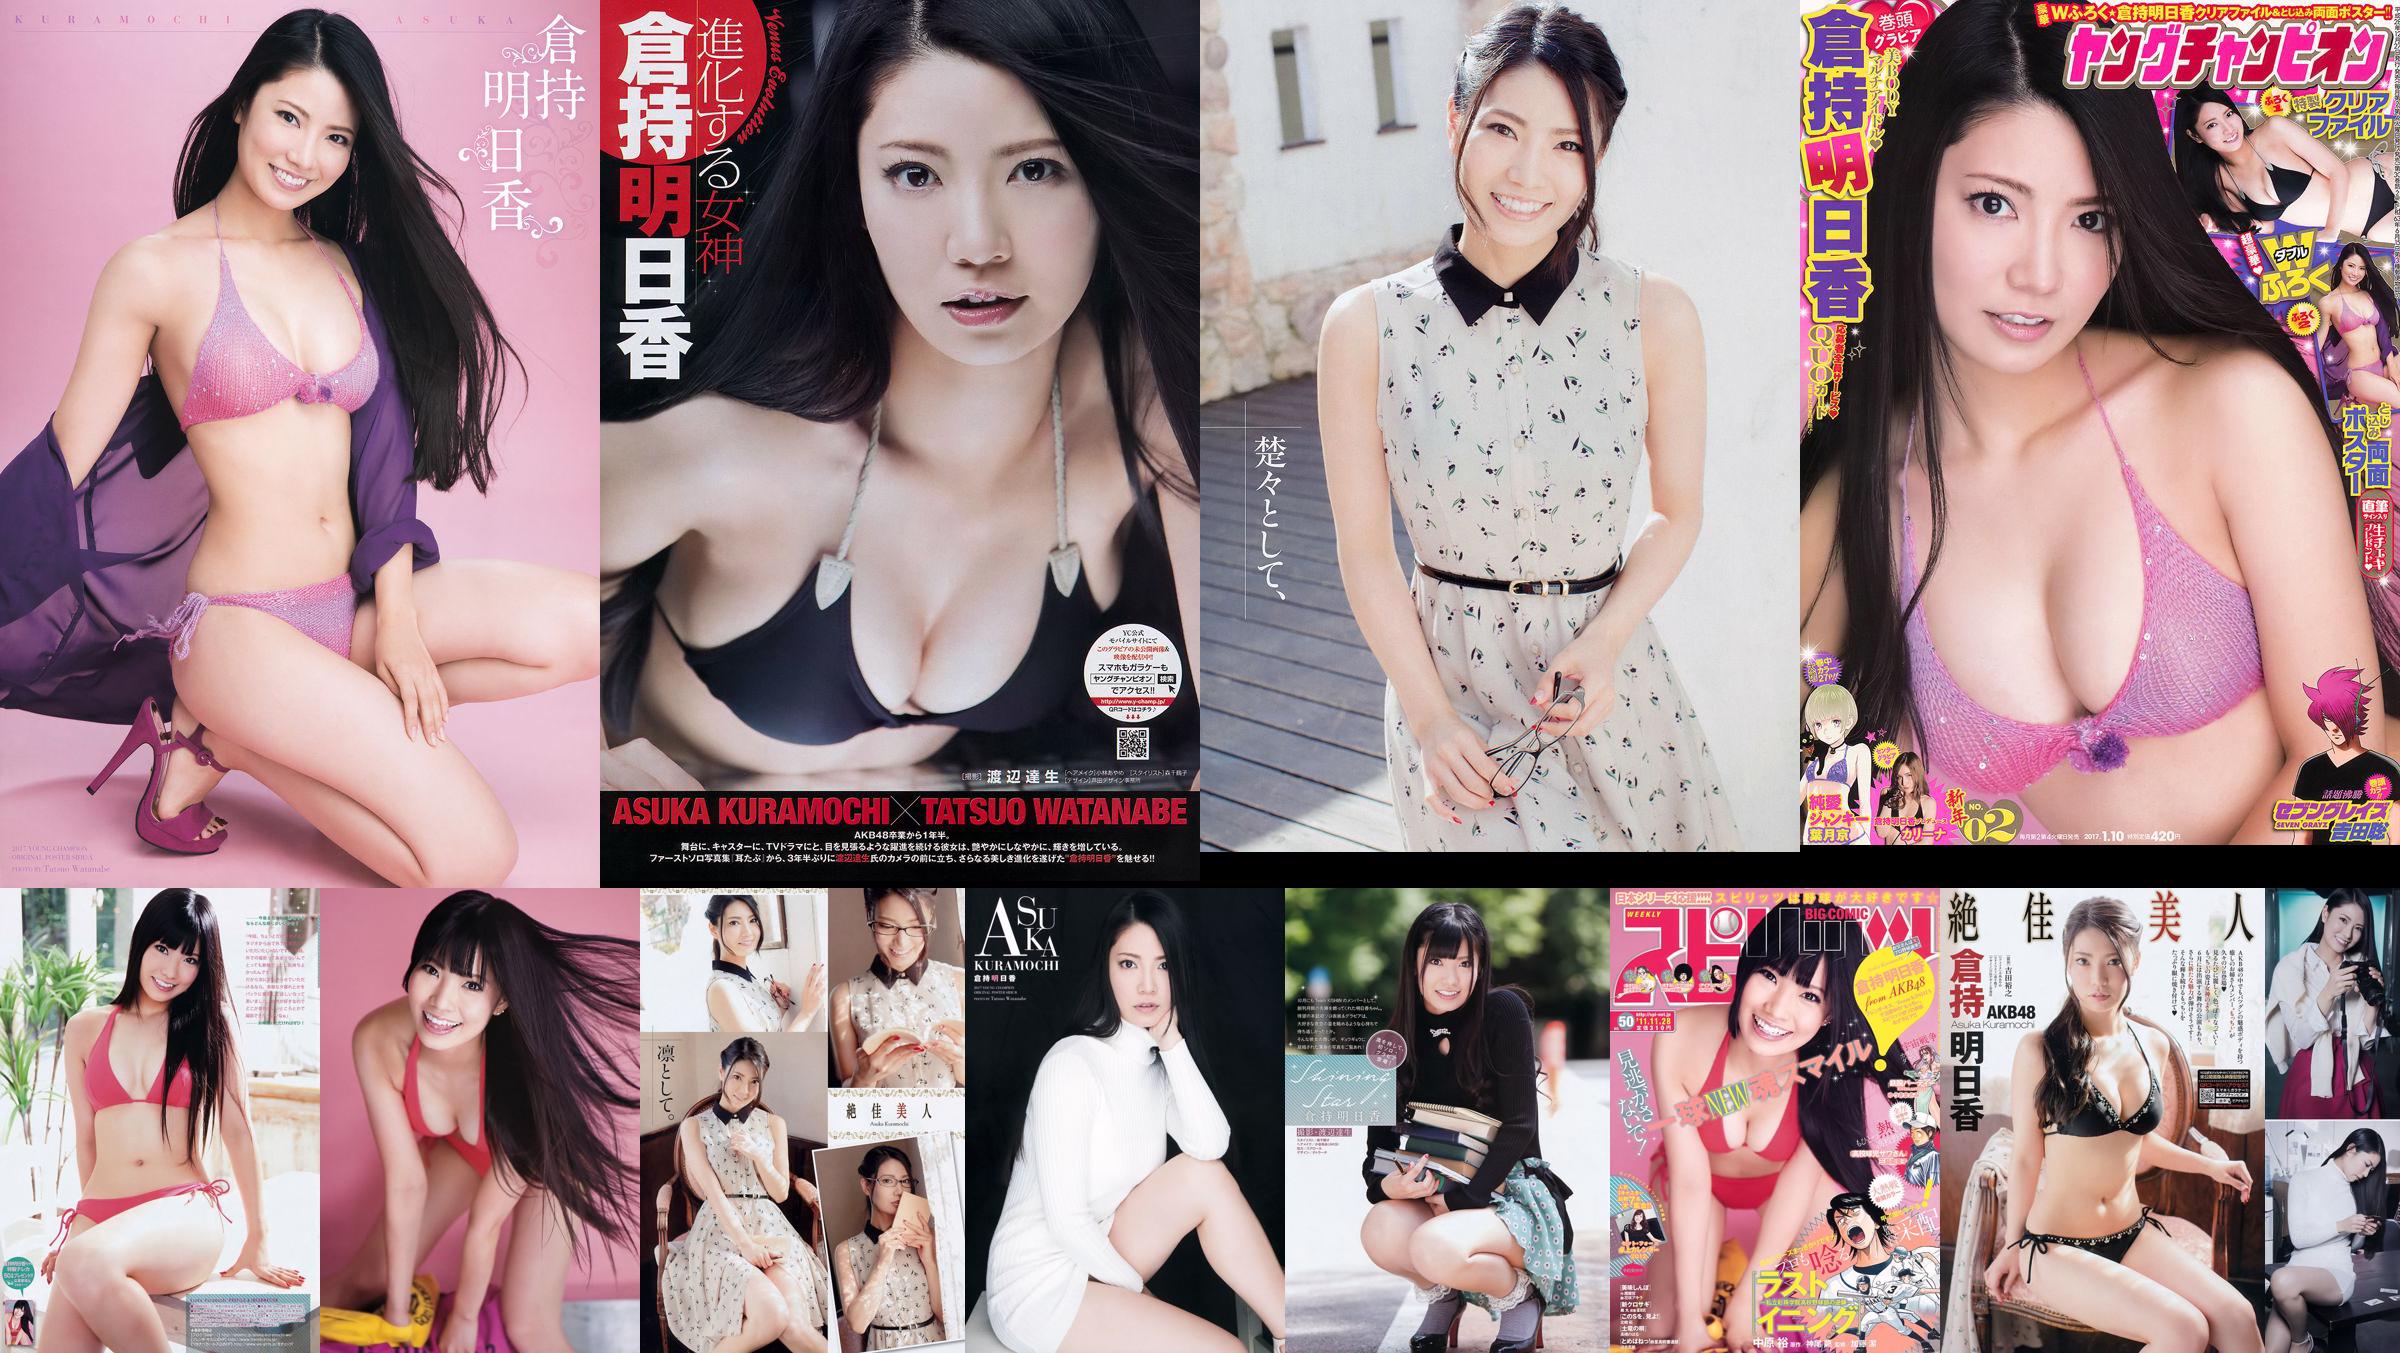 [Jonge kampioen] Asuka Kuramochi 2015 No.09 Photo Magazine No.ae3bac Pagina 1